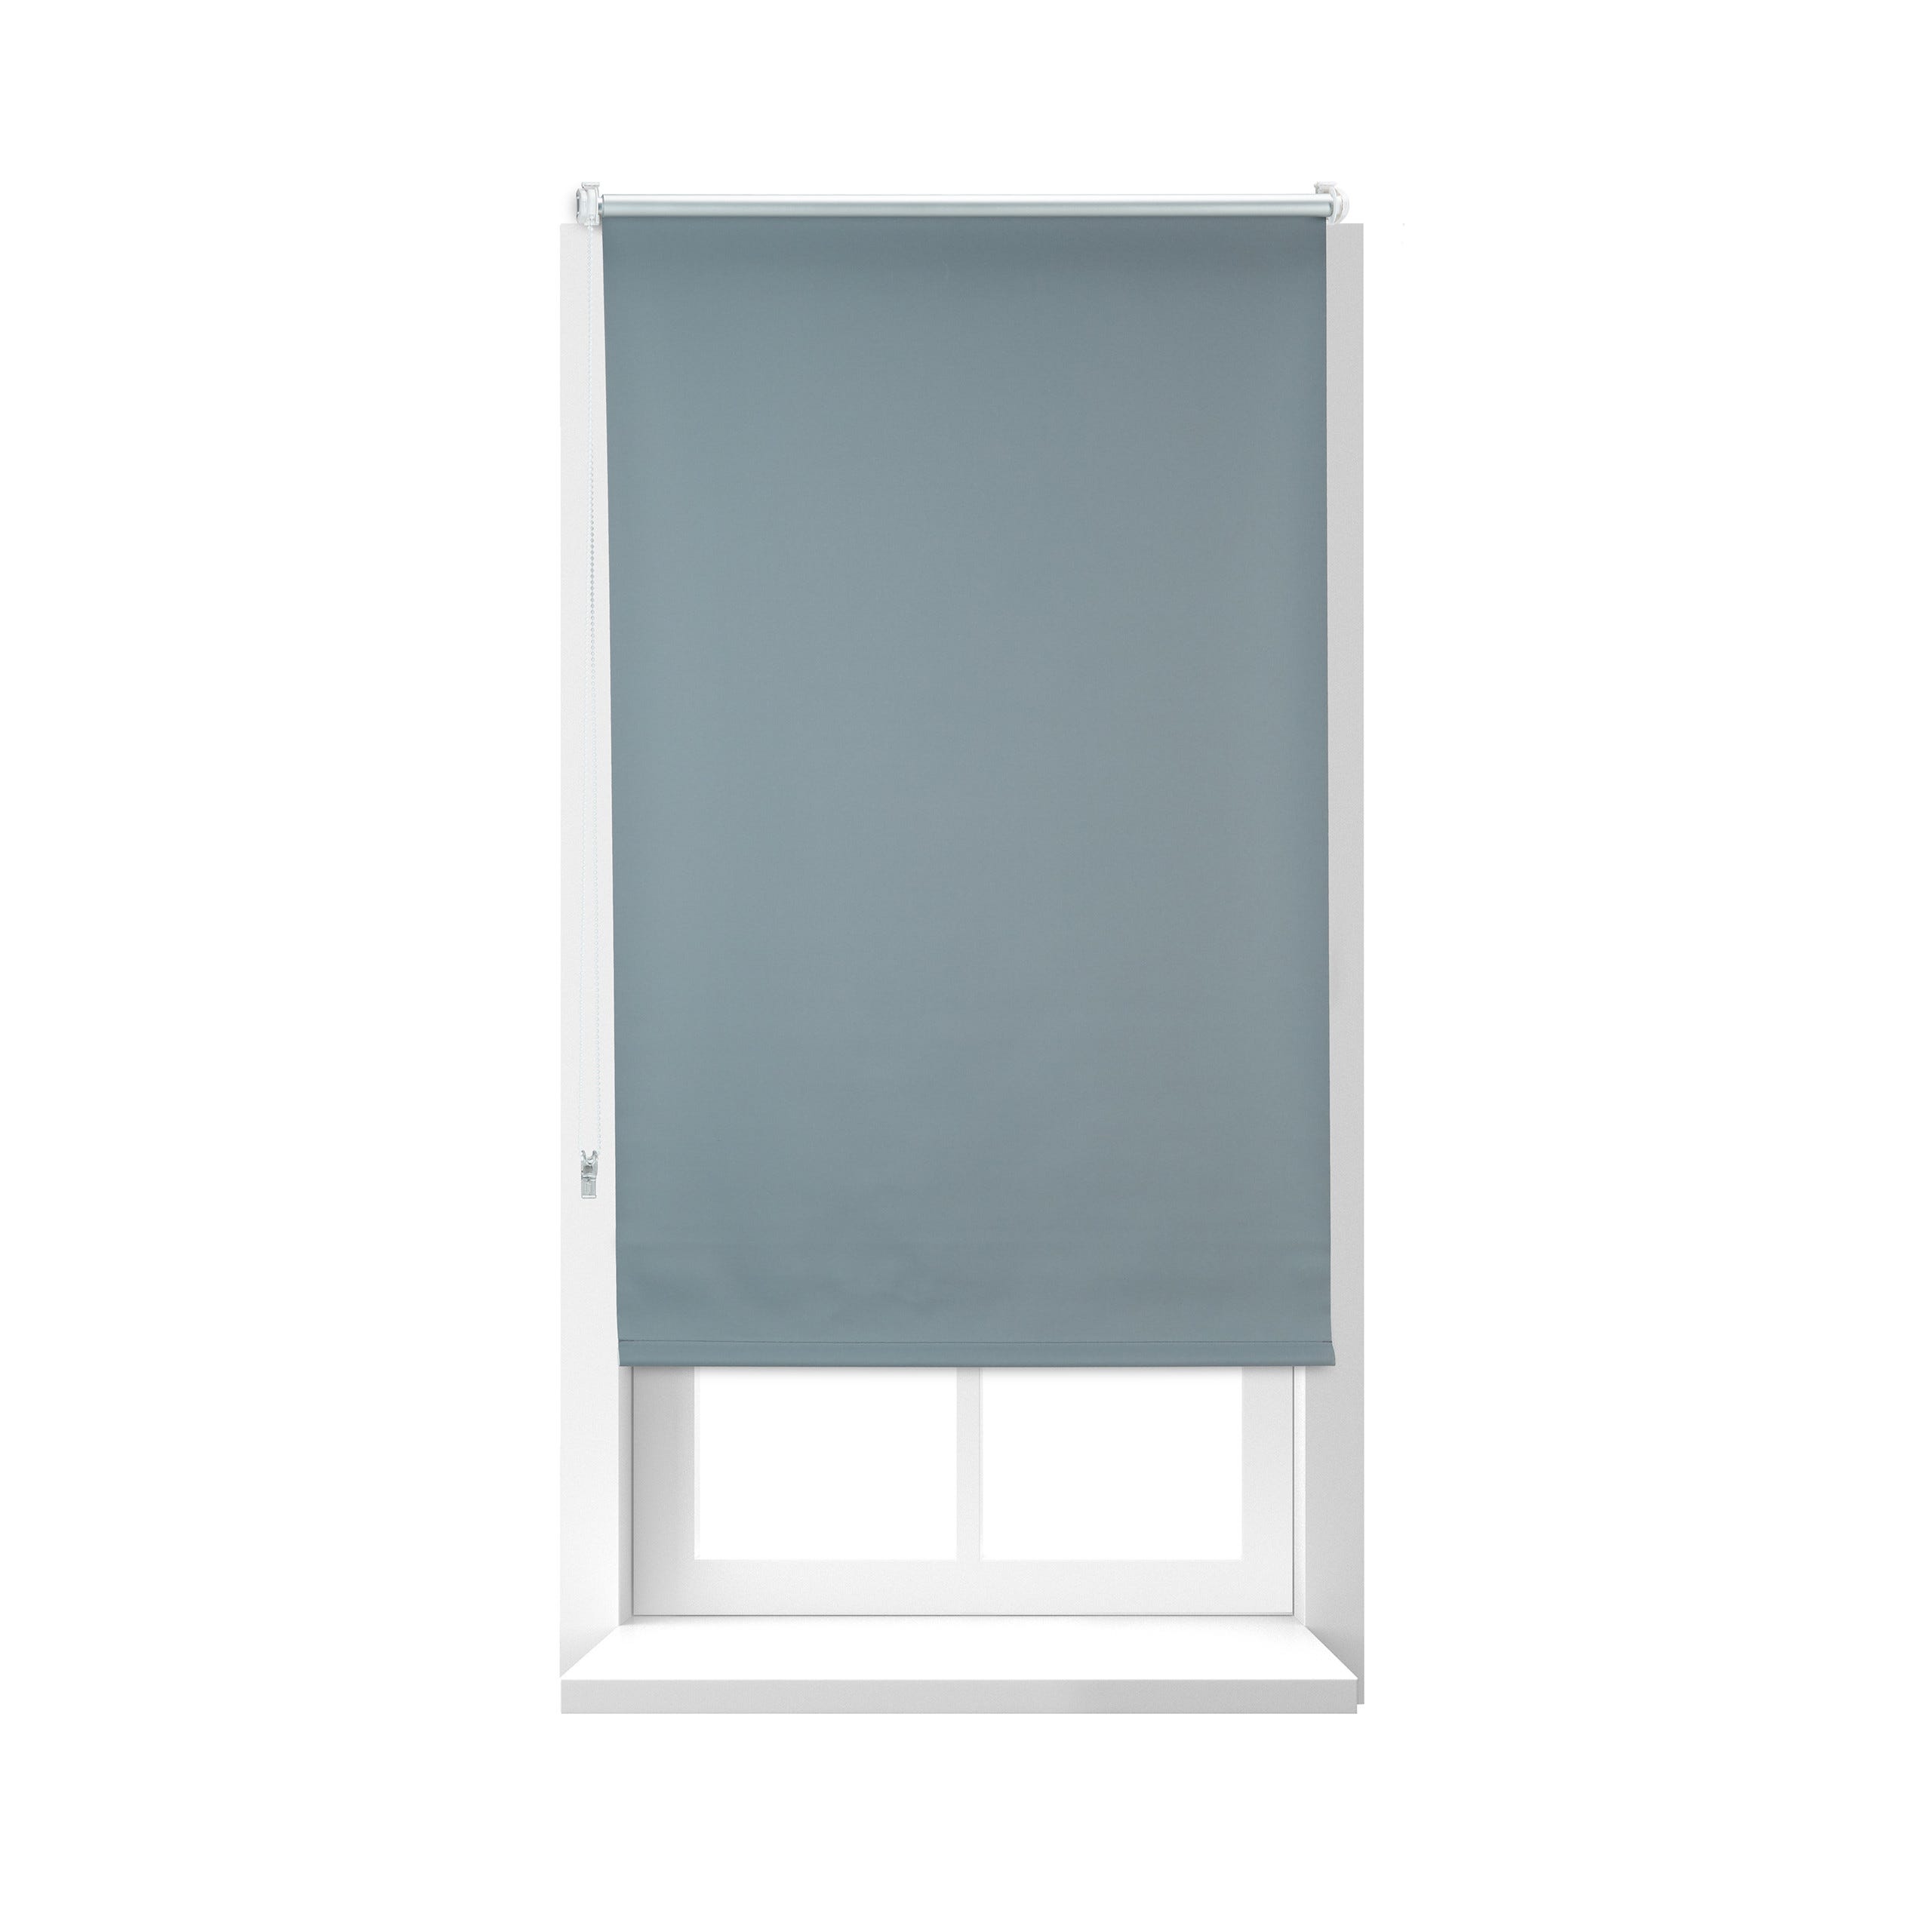 Tenda a rullo oscurante termica isolante finestra porta senza fori Carbone  Nero 90x160 cm - Carbone - Shopping.com